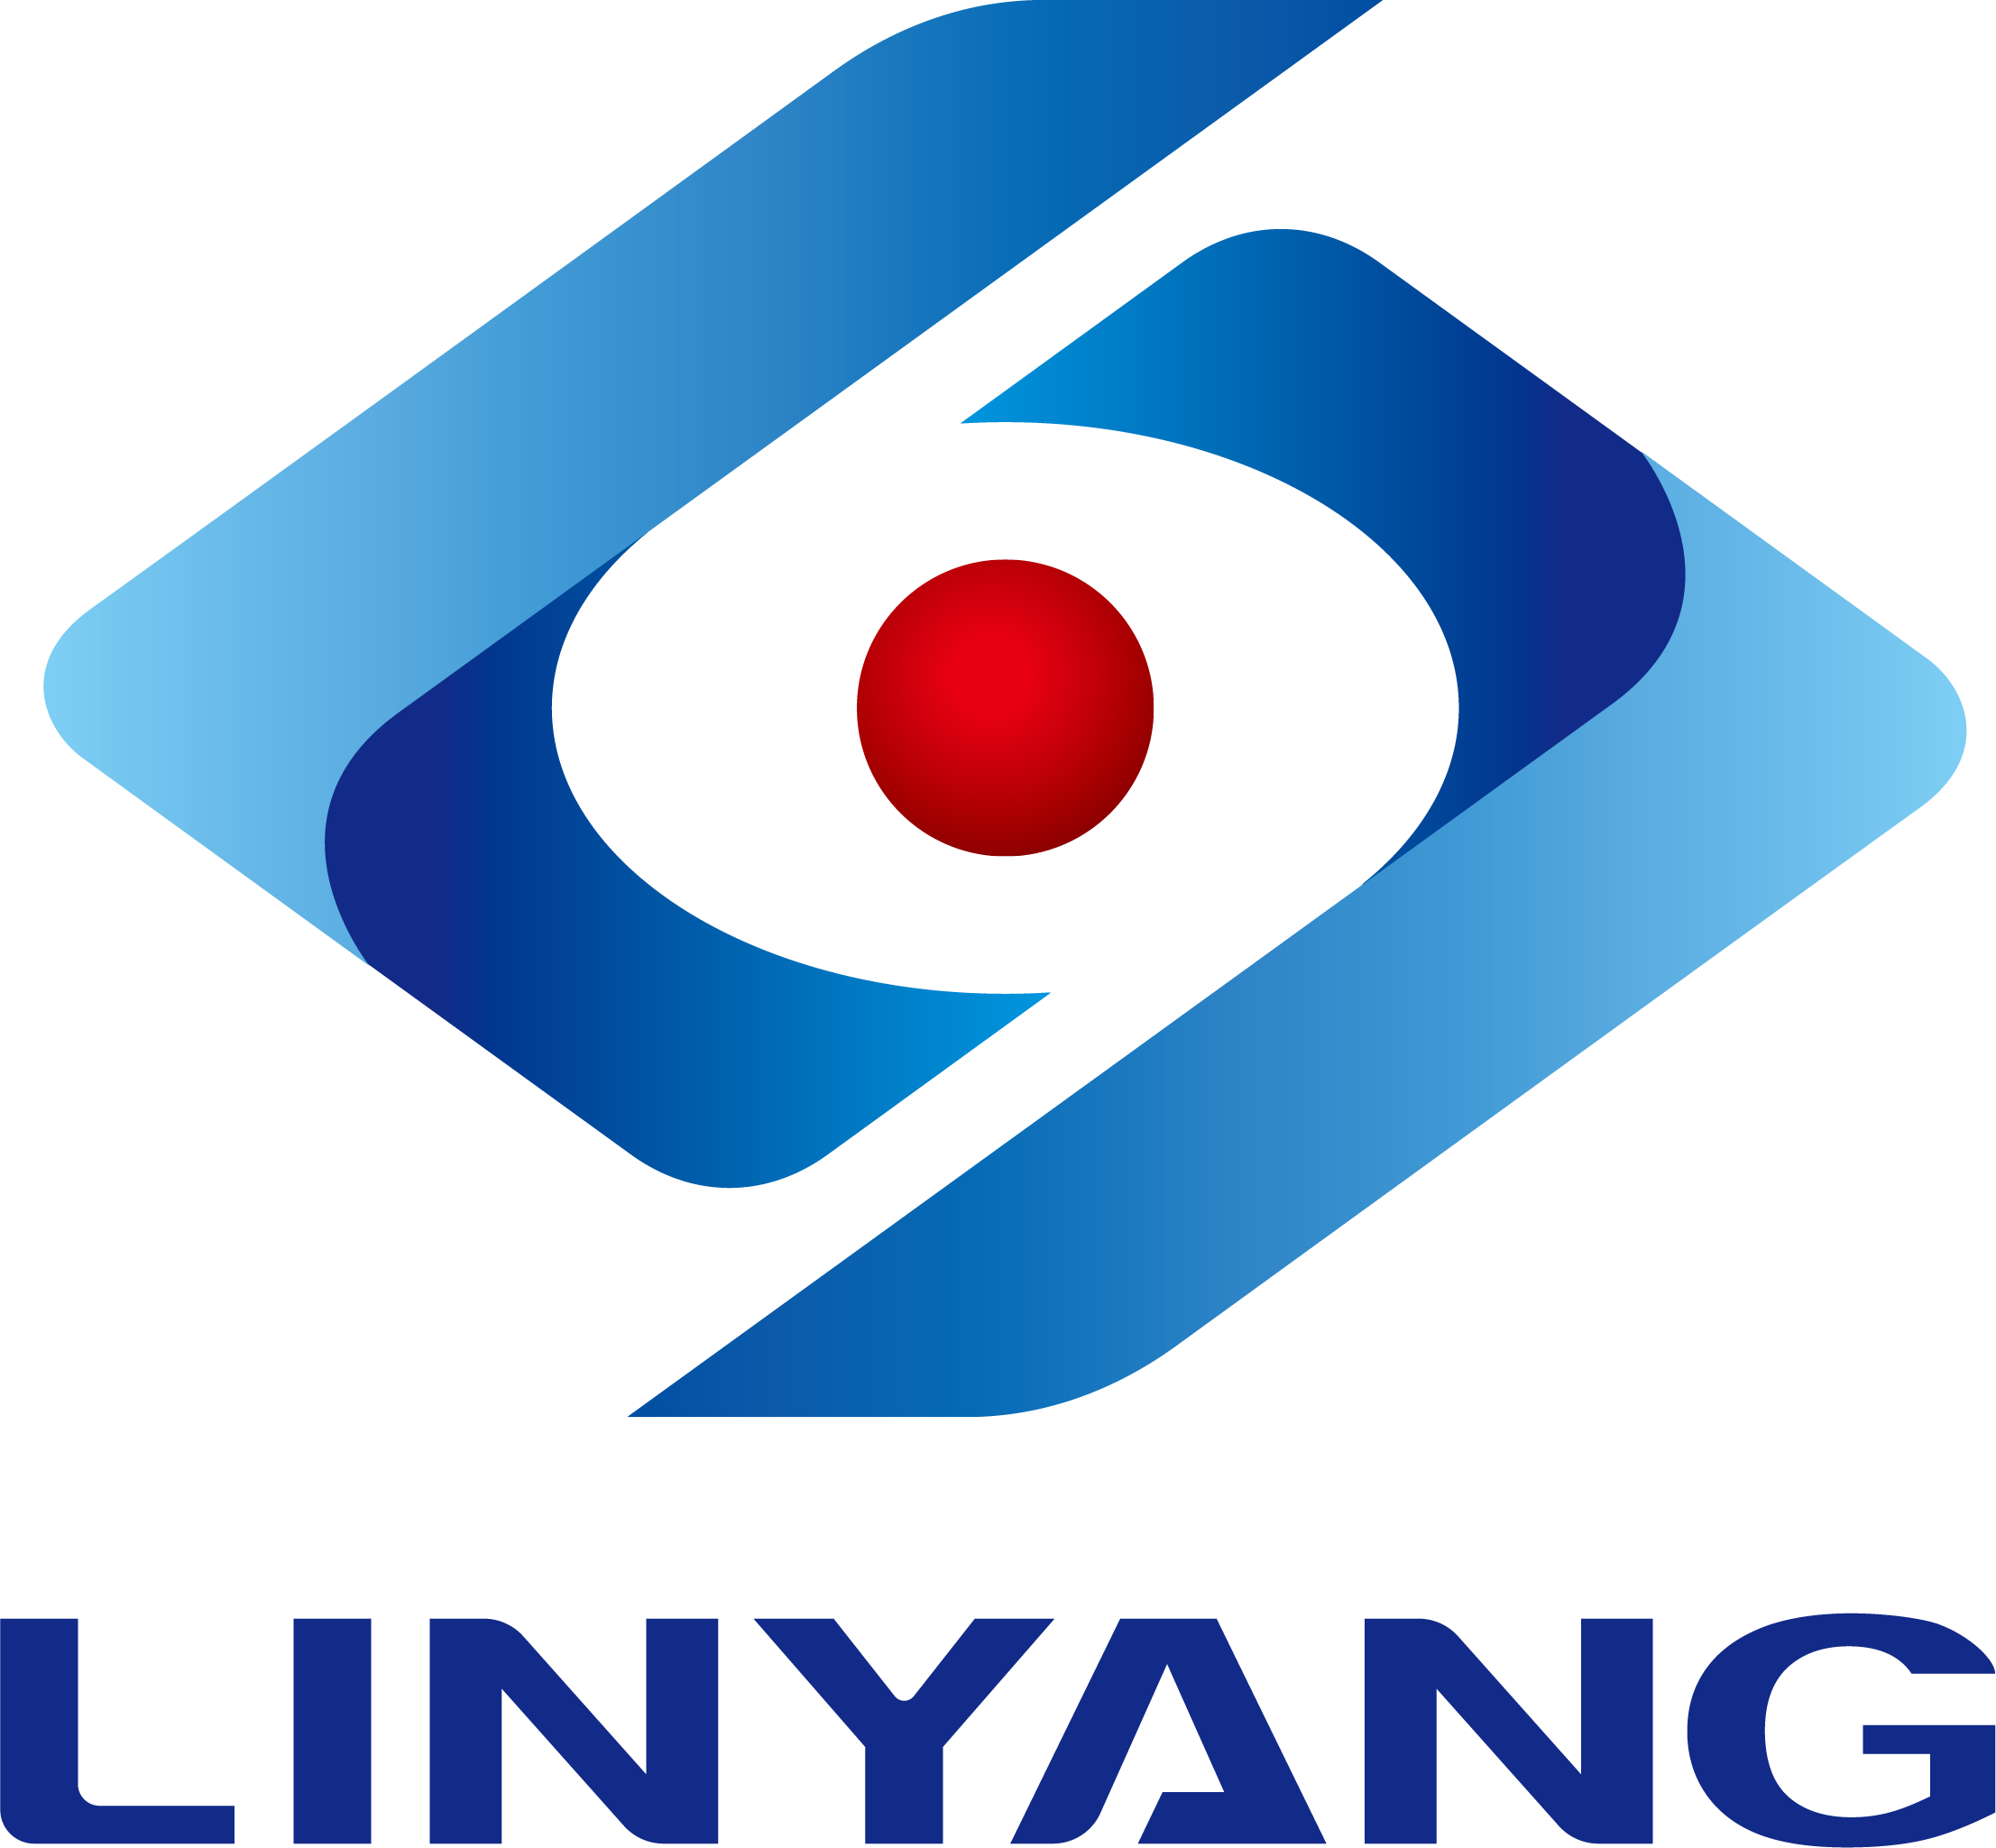 Linyang Energy, Toplamda Yaklaşık 1,25 milyar yuanlık Akıllı Sayaç Projesi ve Fotovoltaik Projeye İmza Attı